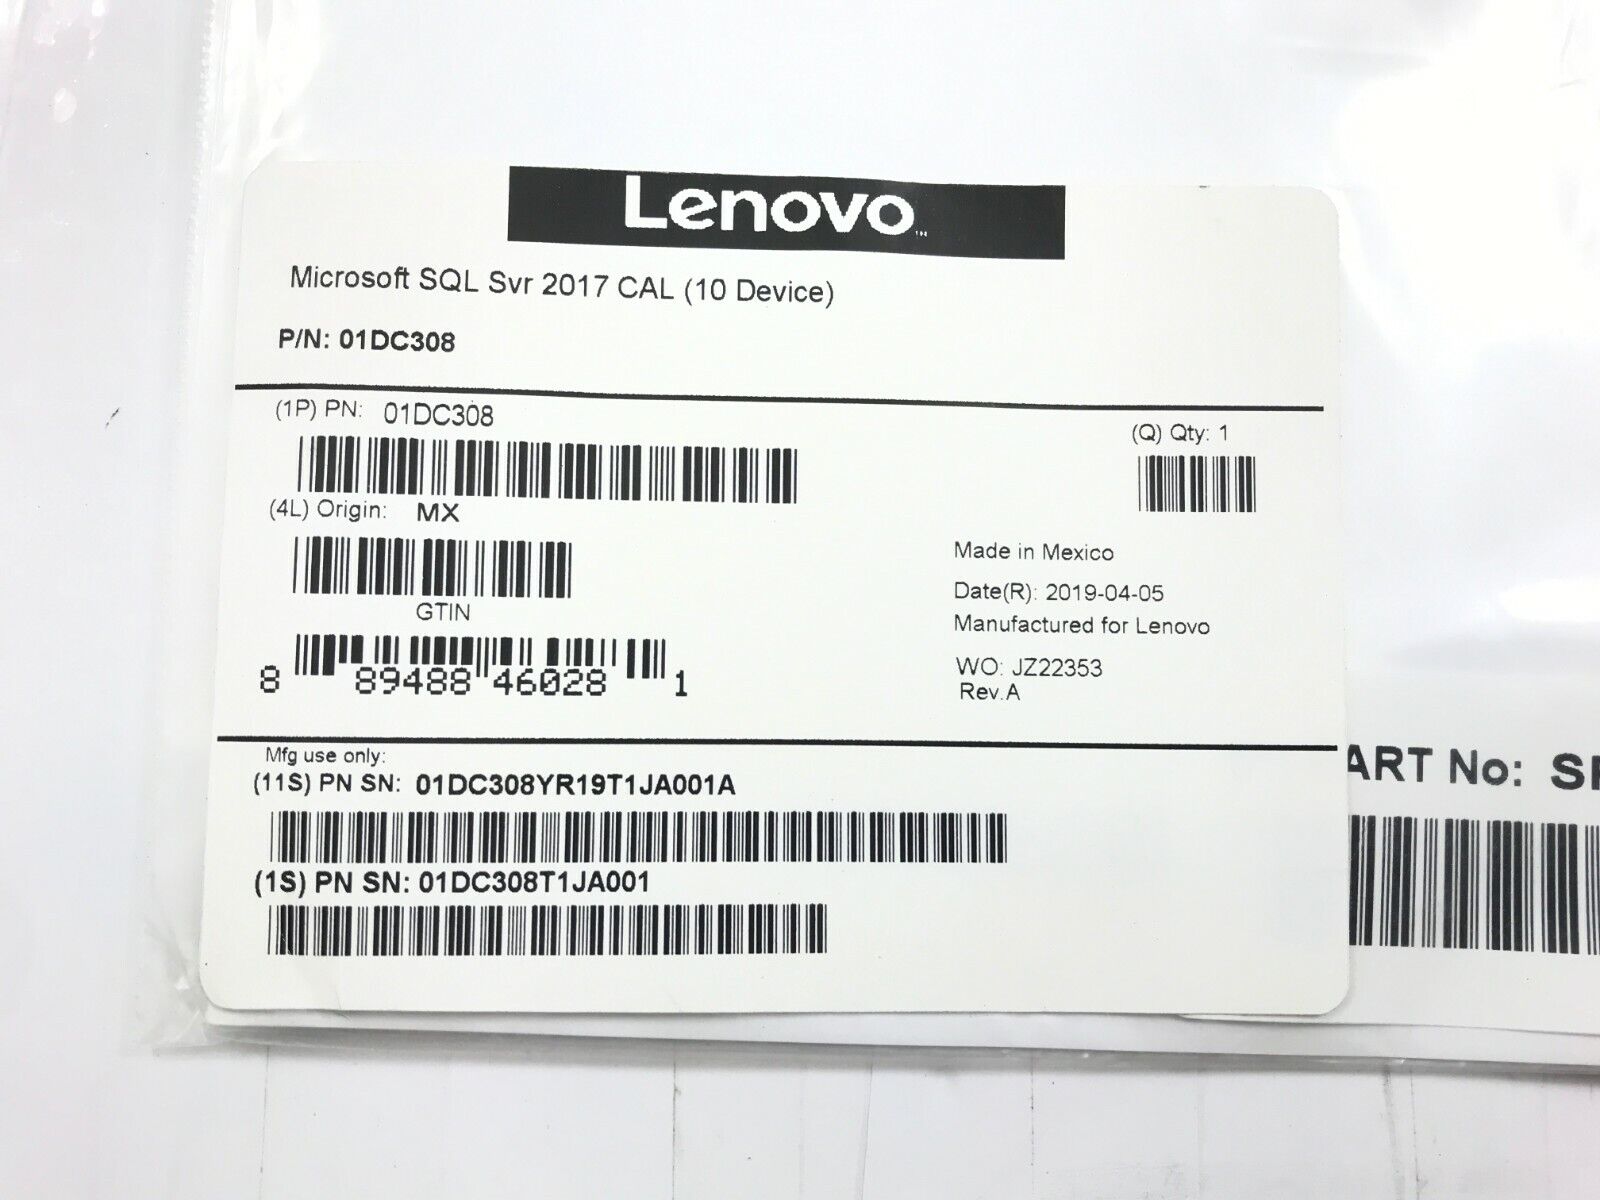 Lenovo 01DC308 Microsoft SQL Server 2017 License - 10 Device CAL